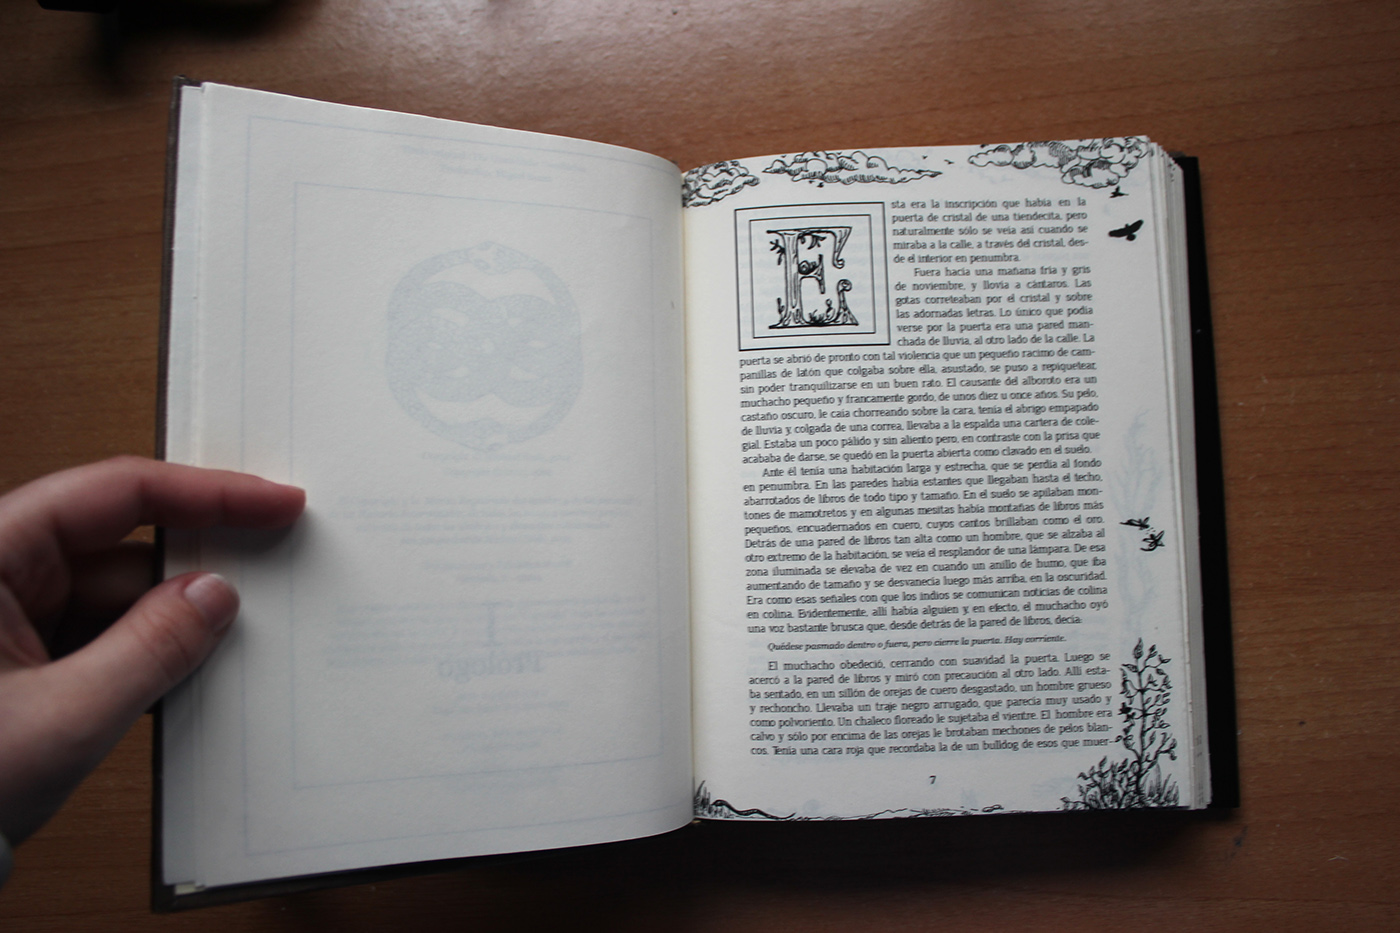 DIY handmade libro editorial cubierta auryn cosido never Ending Atreyu fuyur Bastian historia interminable artesanal